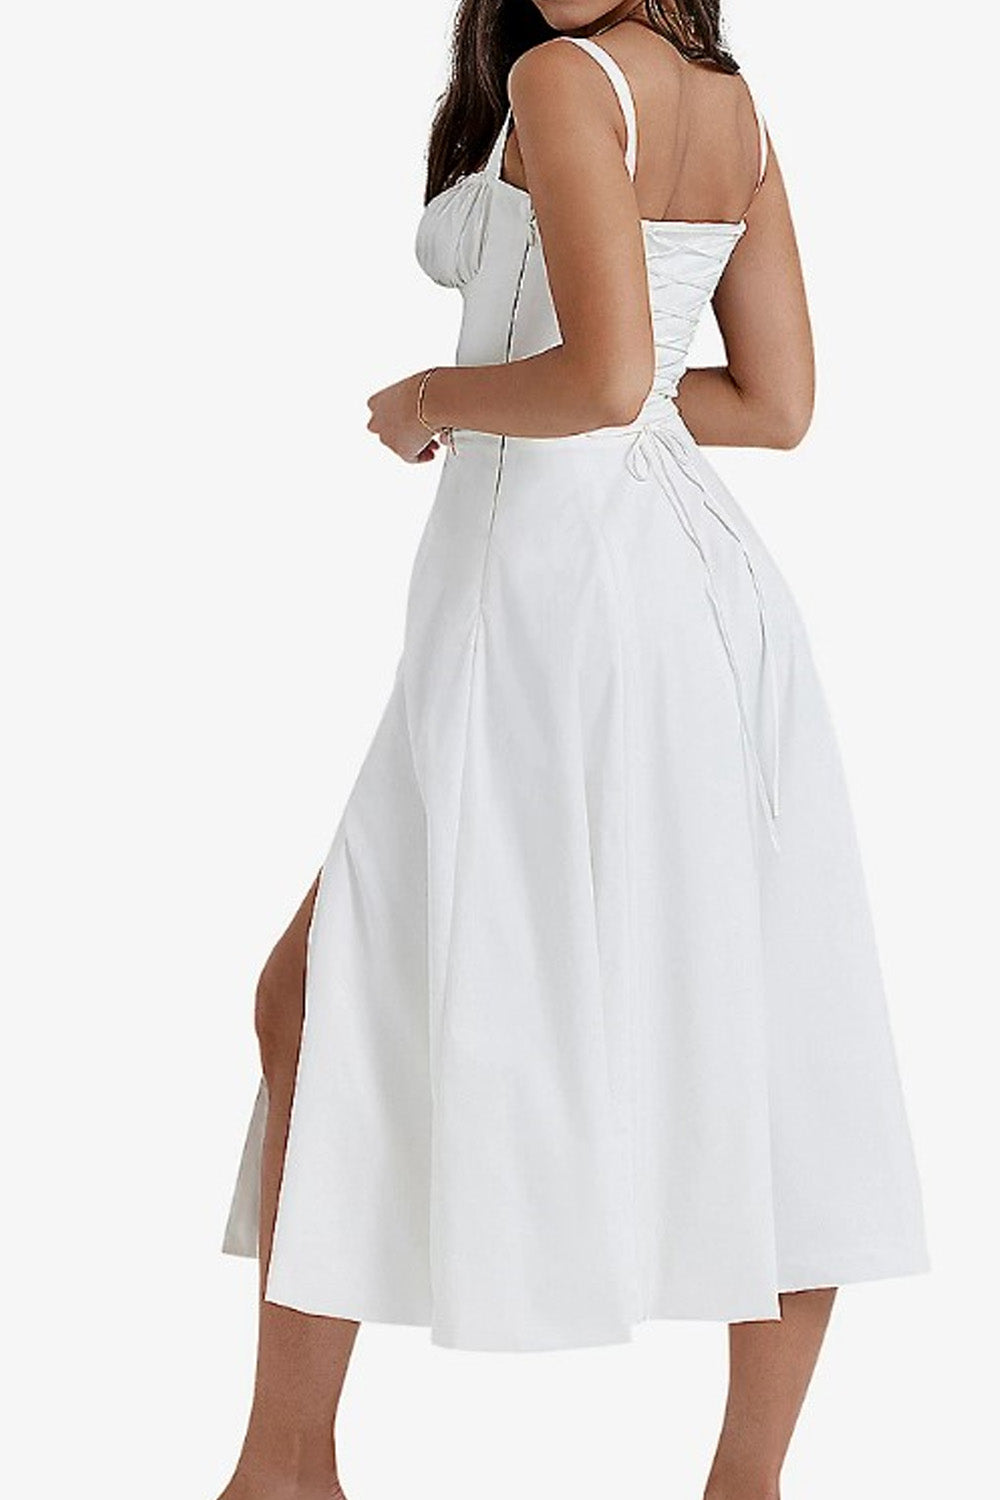 Quixotic White Dress